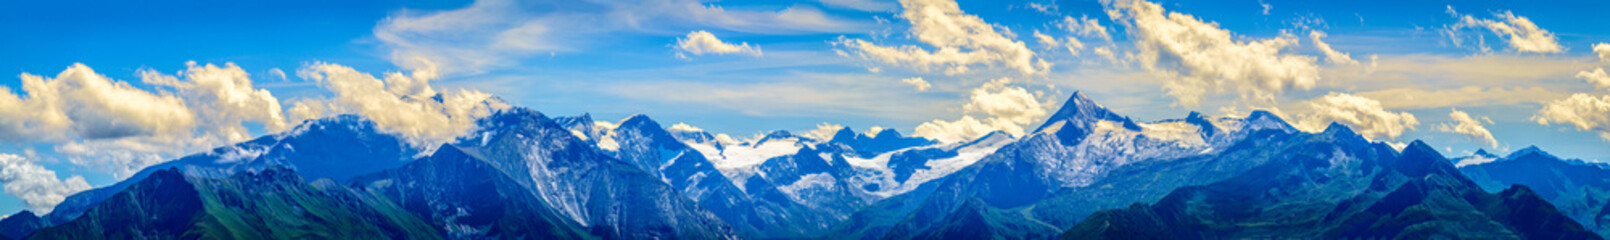 Plakat view from Schmitten mountain in Austria - near Zell am See